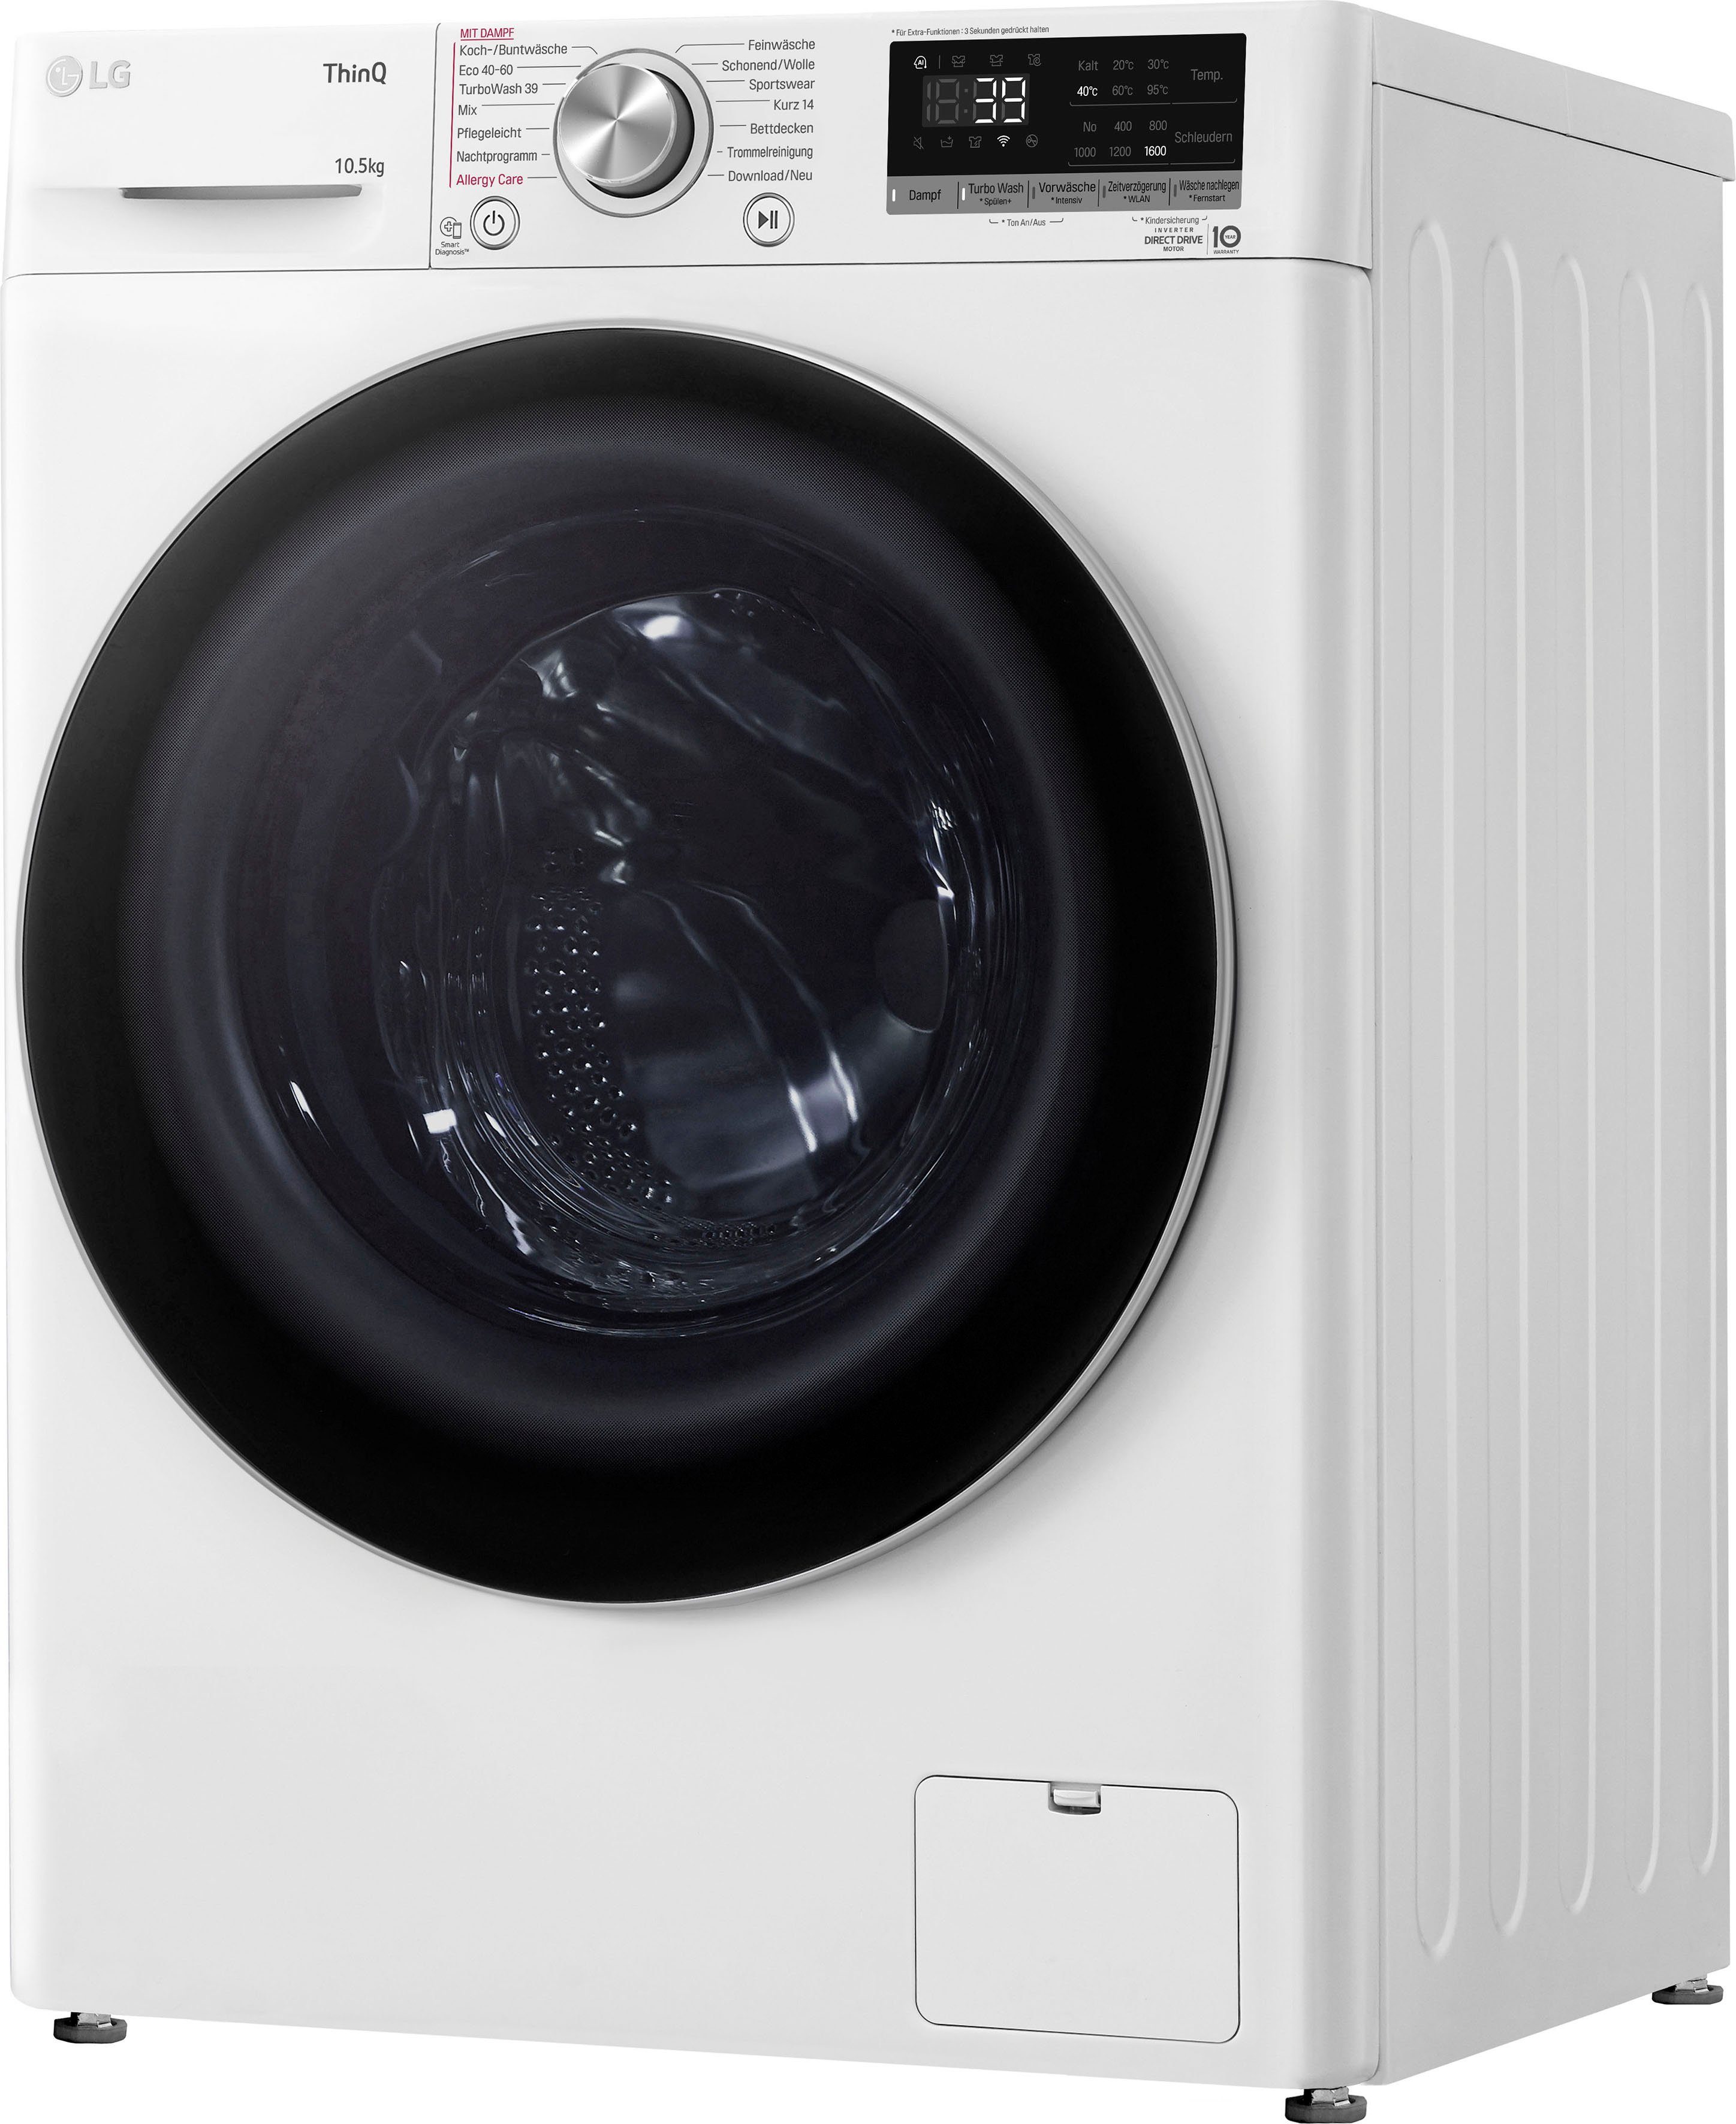 1600 kg, nur TurboWash® Waschmaschine U/min, in Waschen Minuten F6WV710P1, 39 - LG 10,5